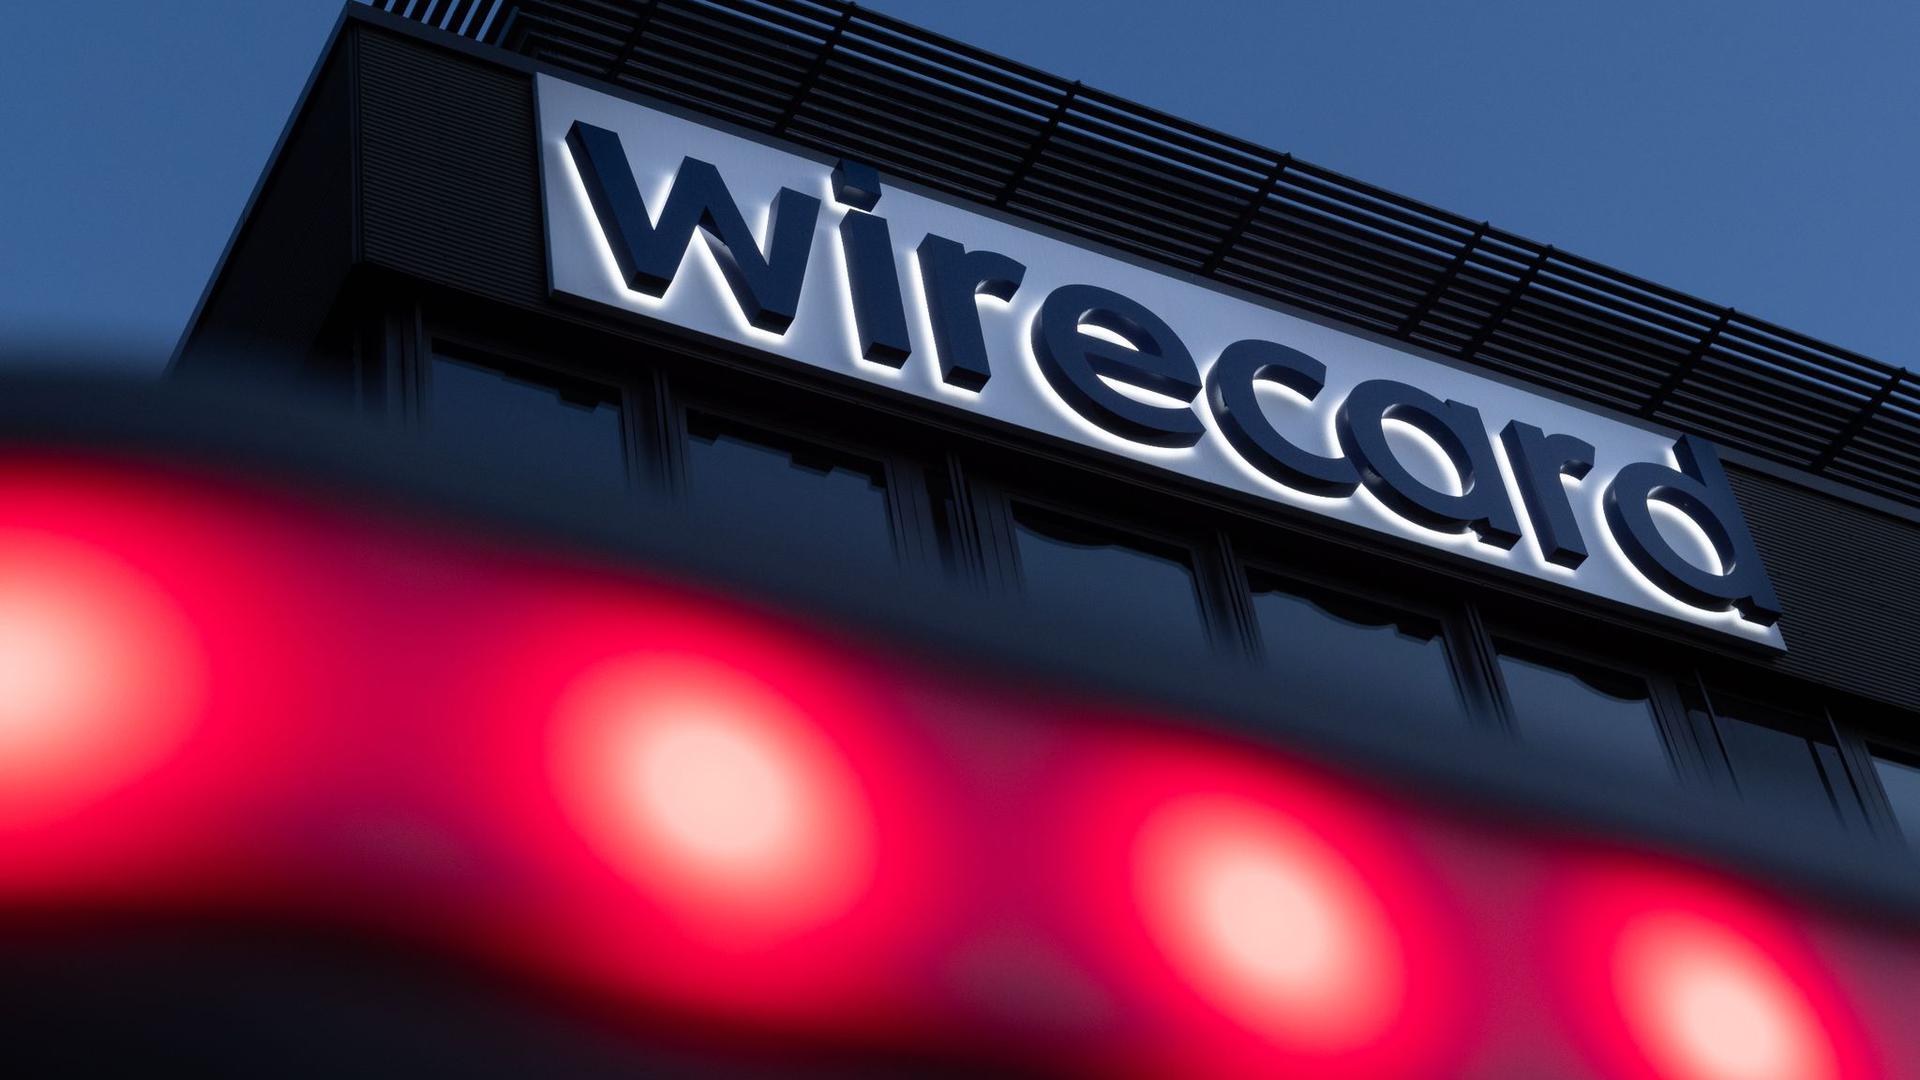 Rote Lichter leuchten vor dem Schriftzug von Wirecard an der damaligen Firmenzentrale des Zahlungsdienstleisters.